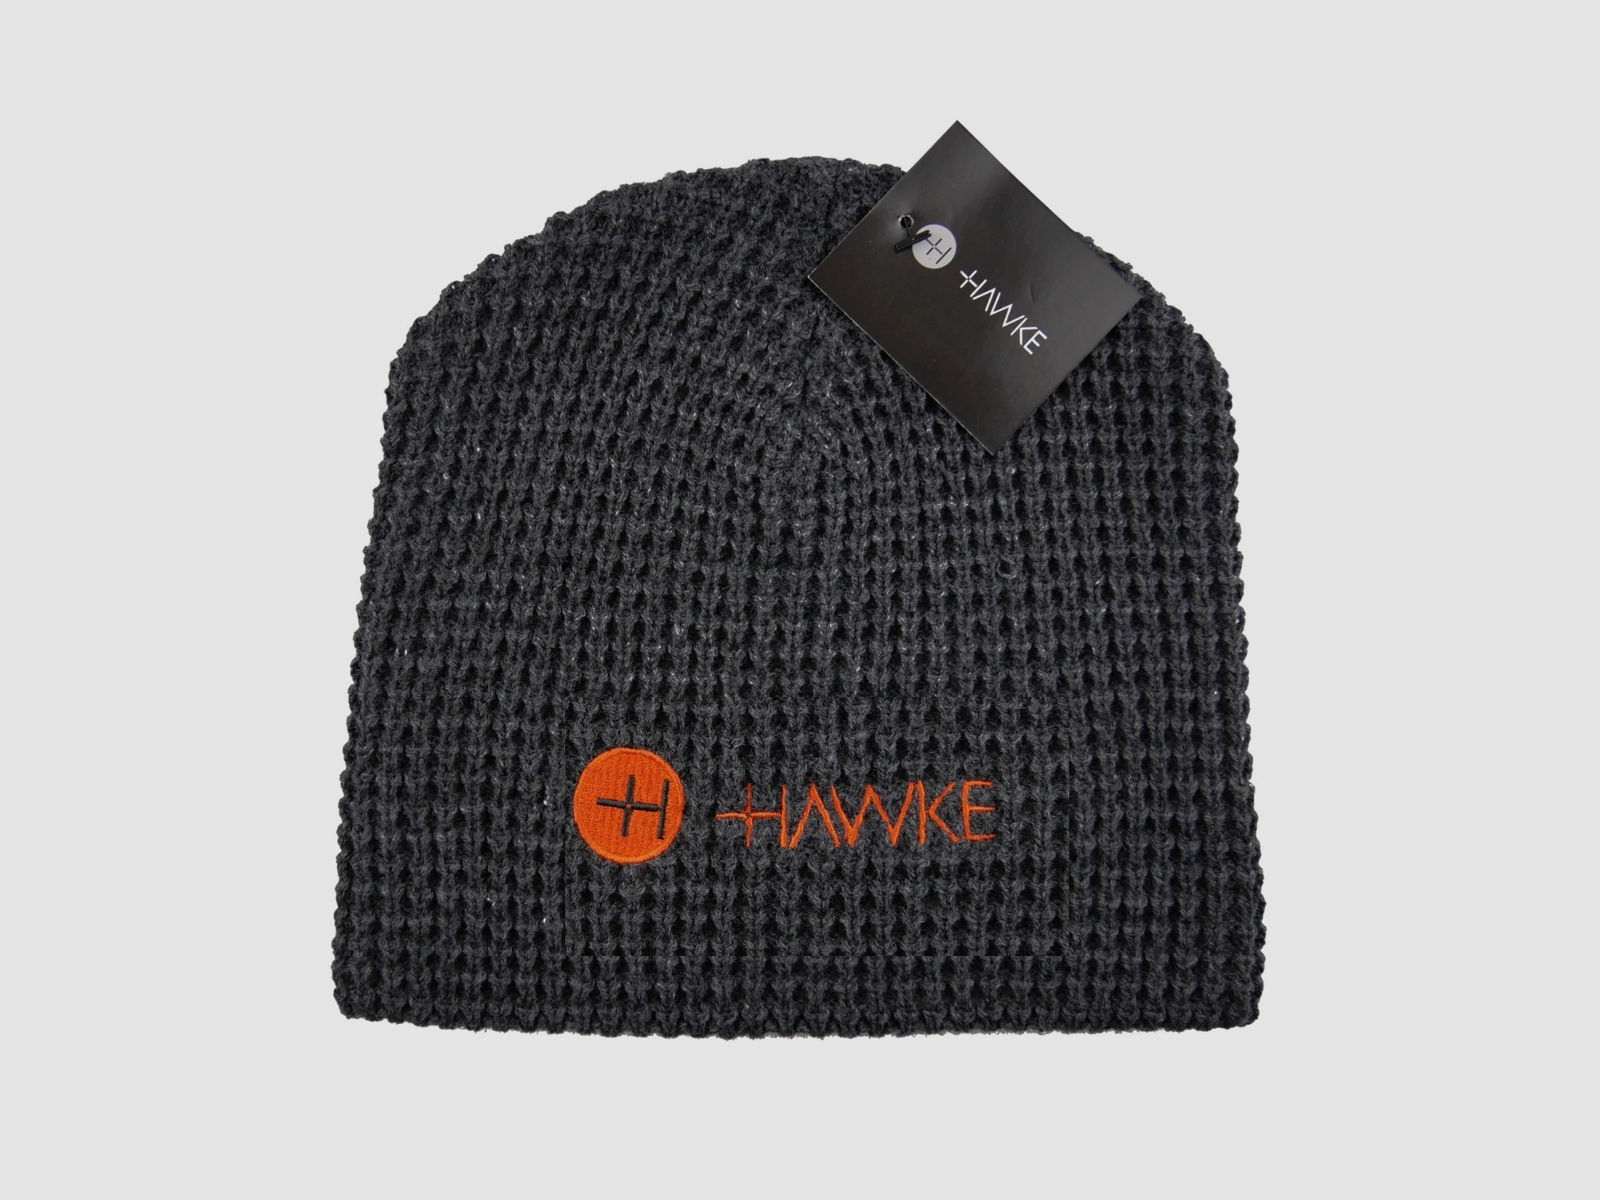 Hawke 99341 grey waffle fleece Beanie Mütze Wintermütze